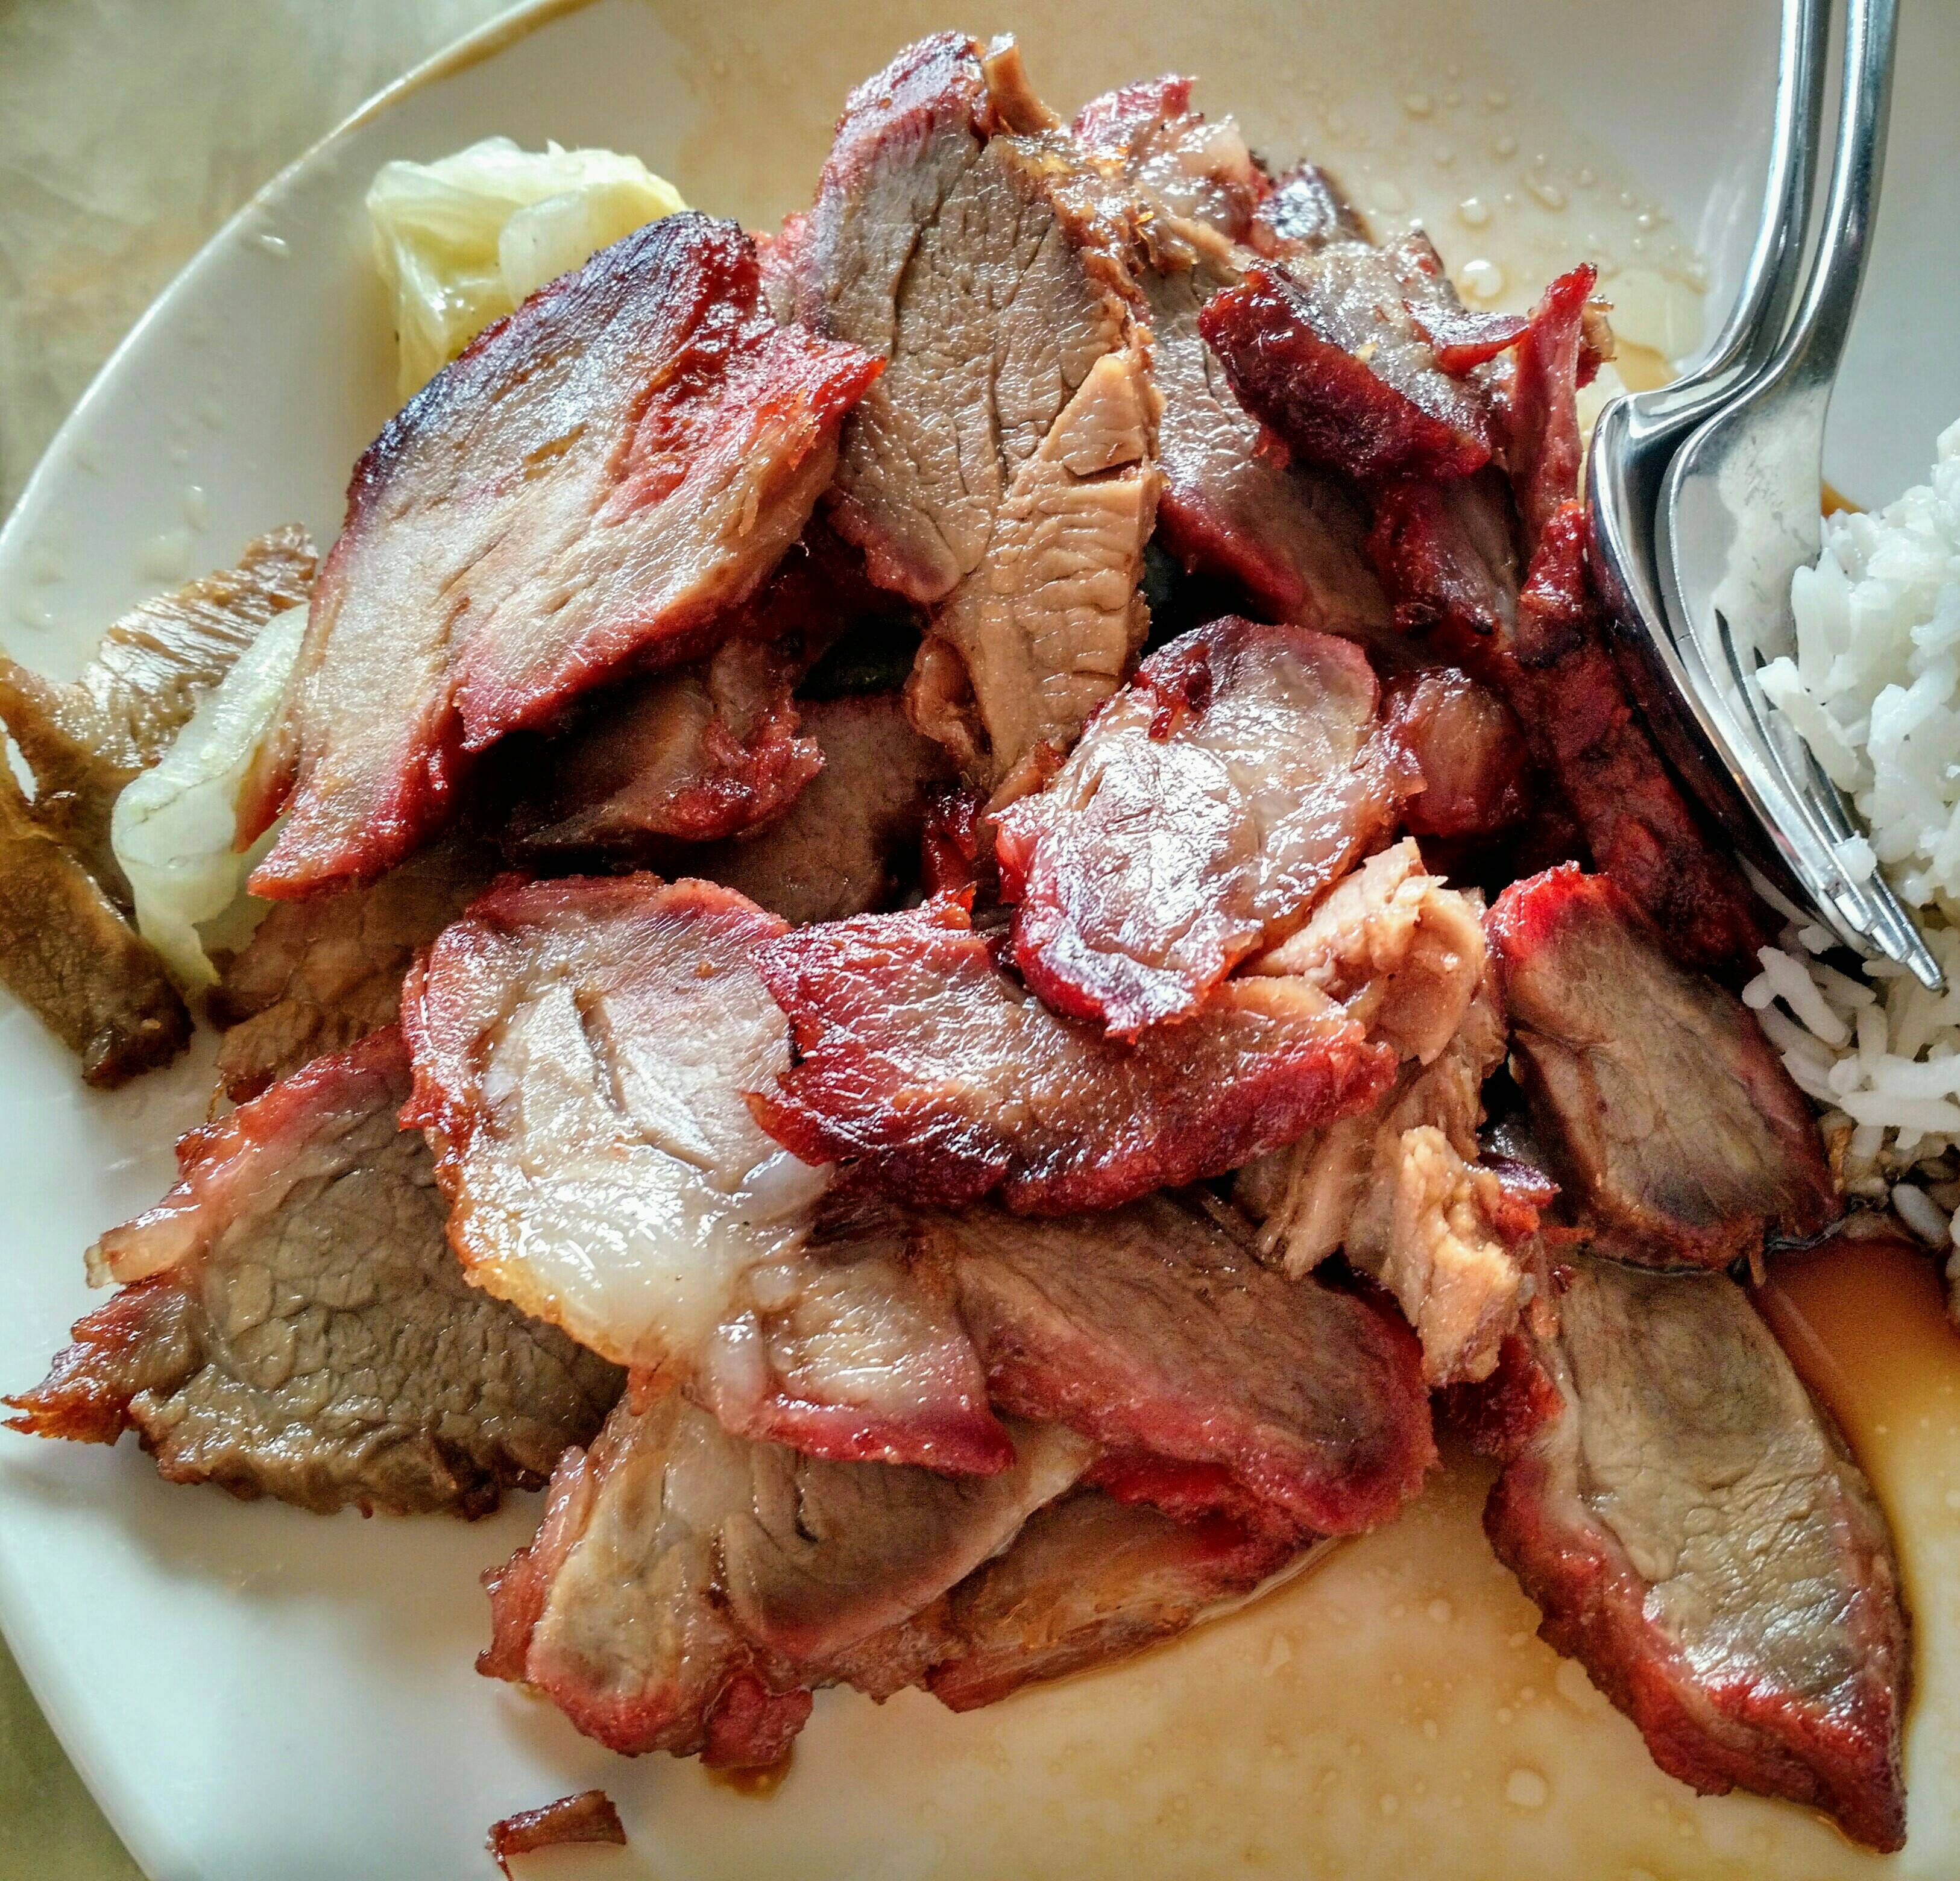 Char siu, laut CNN-Poll eines der leckersten Gerichte der Welt, versteckt sich auf der Mittagskarte als profanes geröstetes Schweinefleisch.